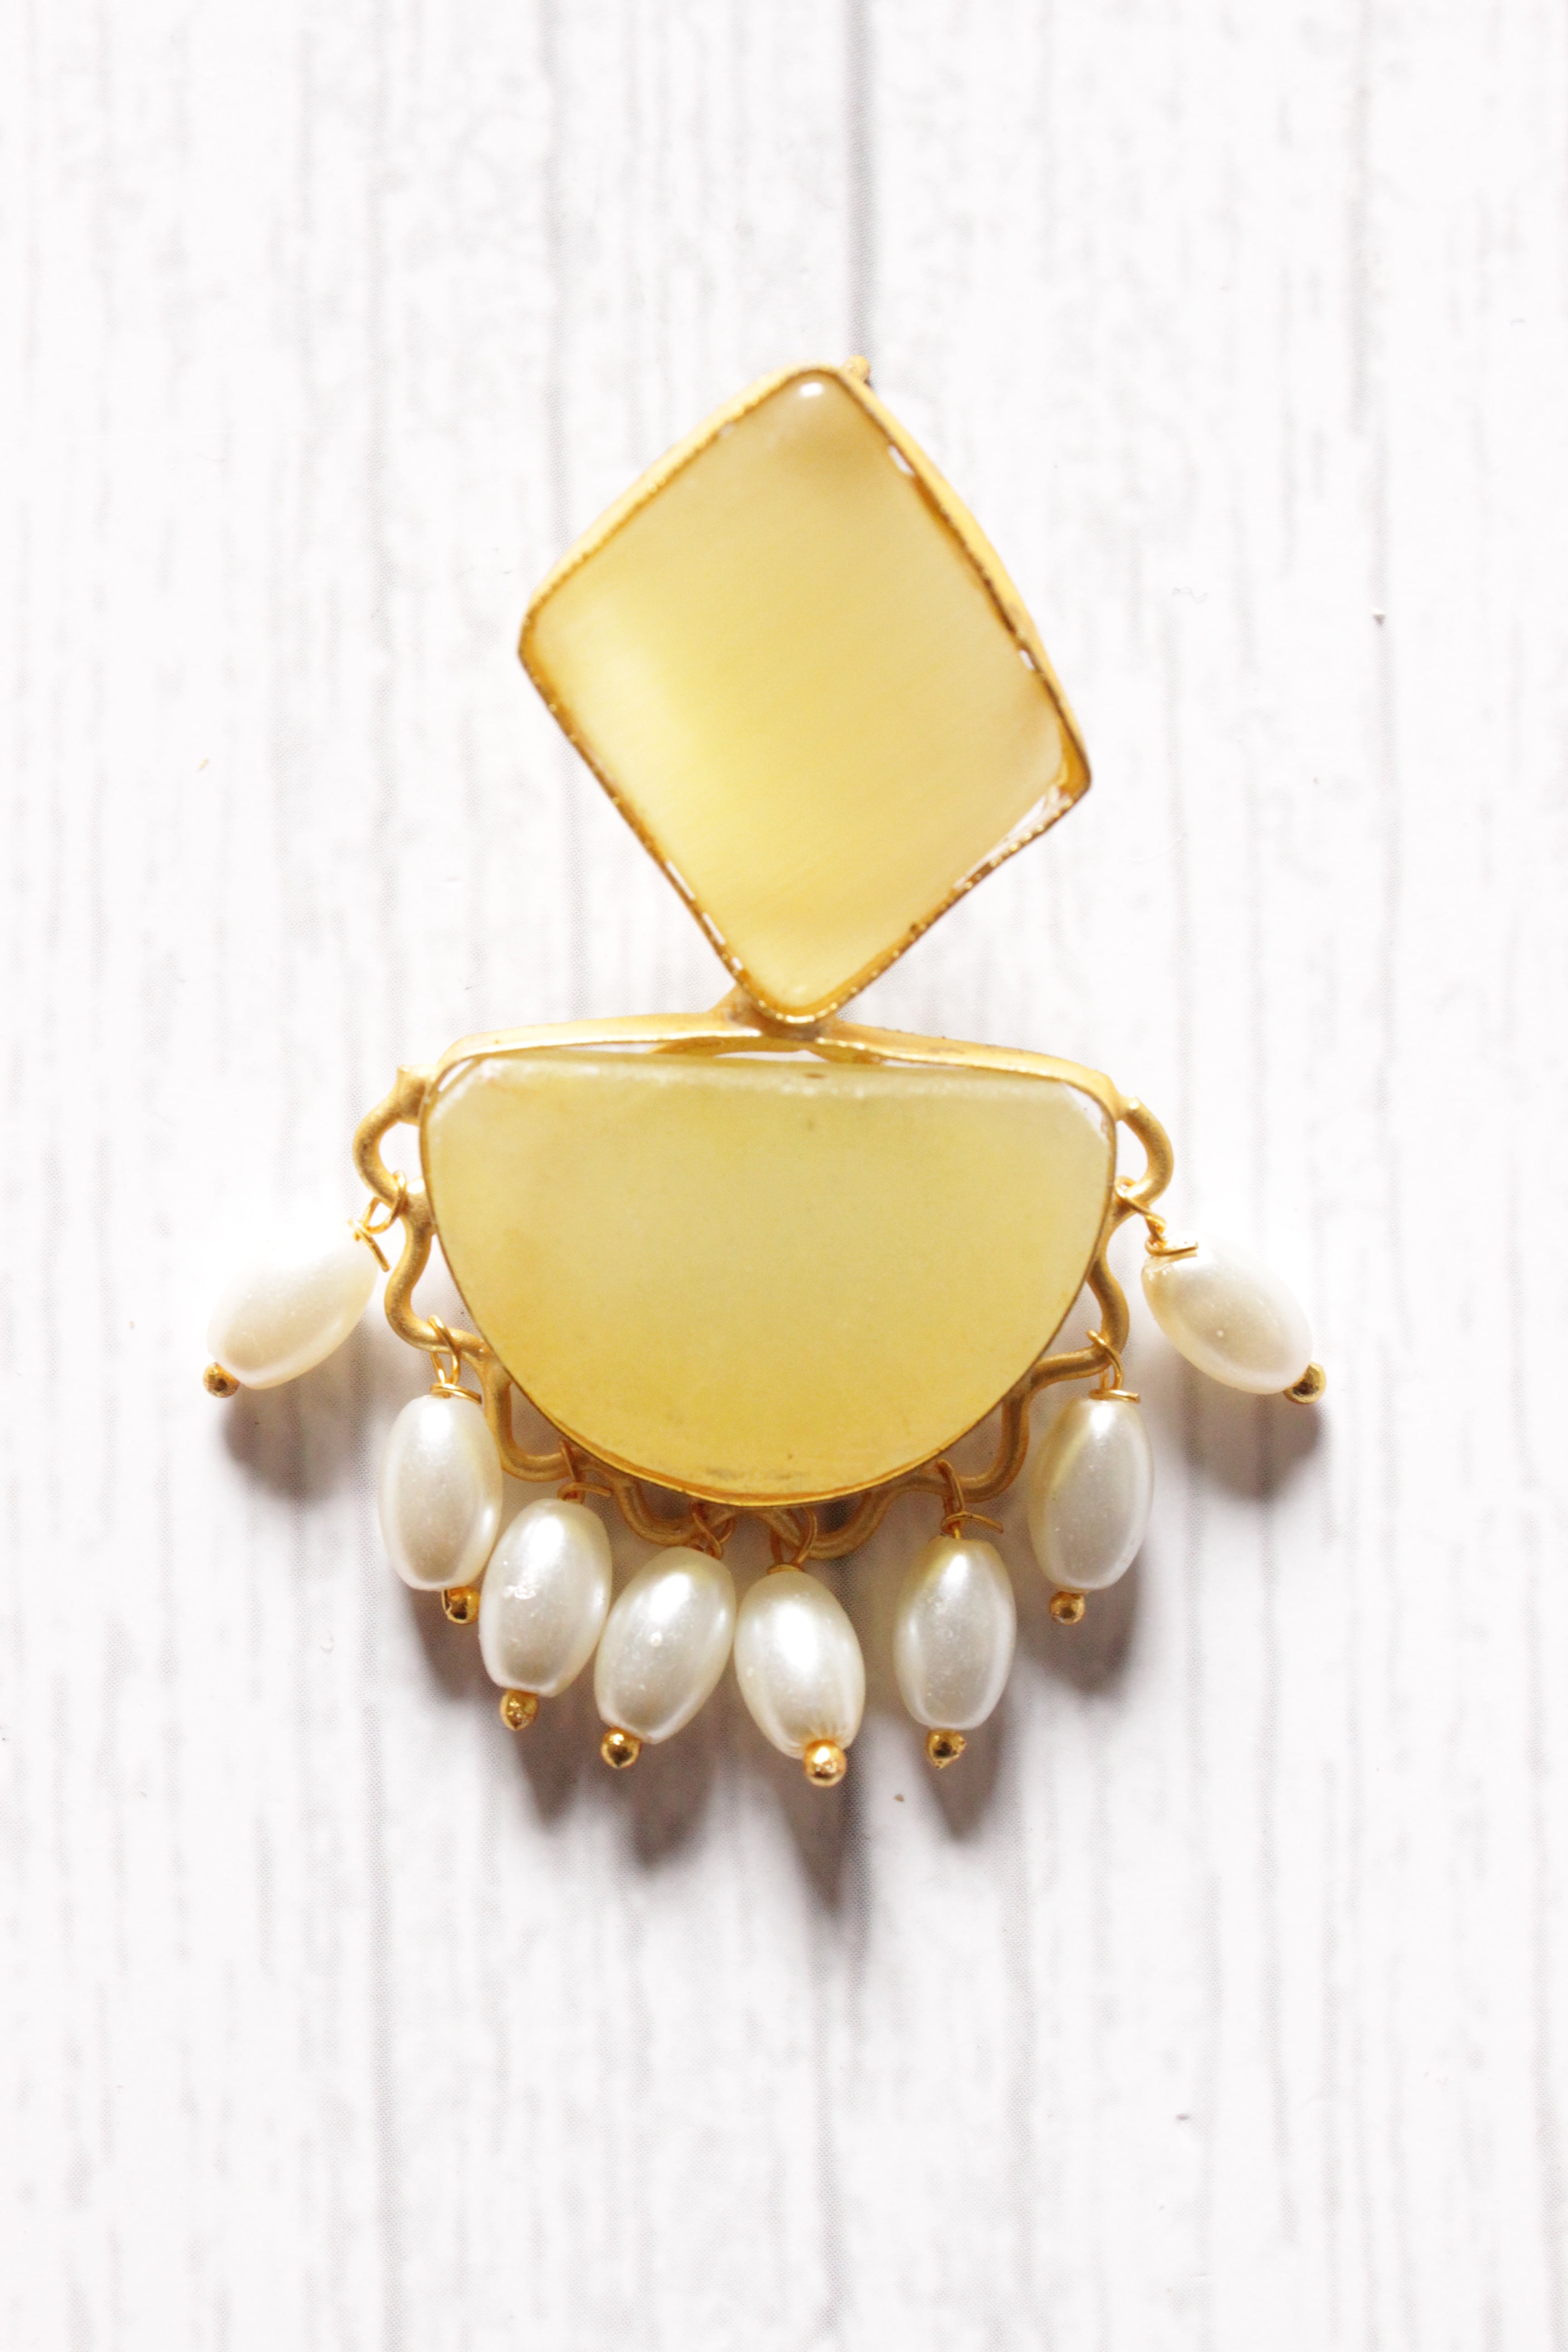 Lemon Yellow Natural Stones Embedded Brass Dangler Earrings